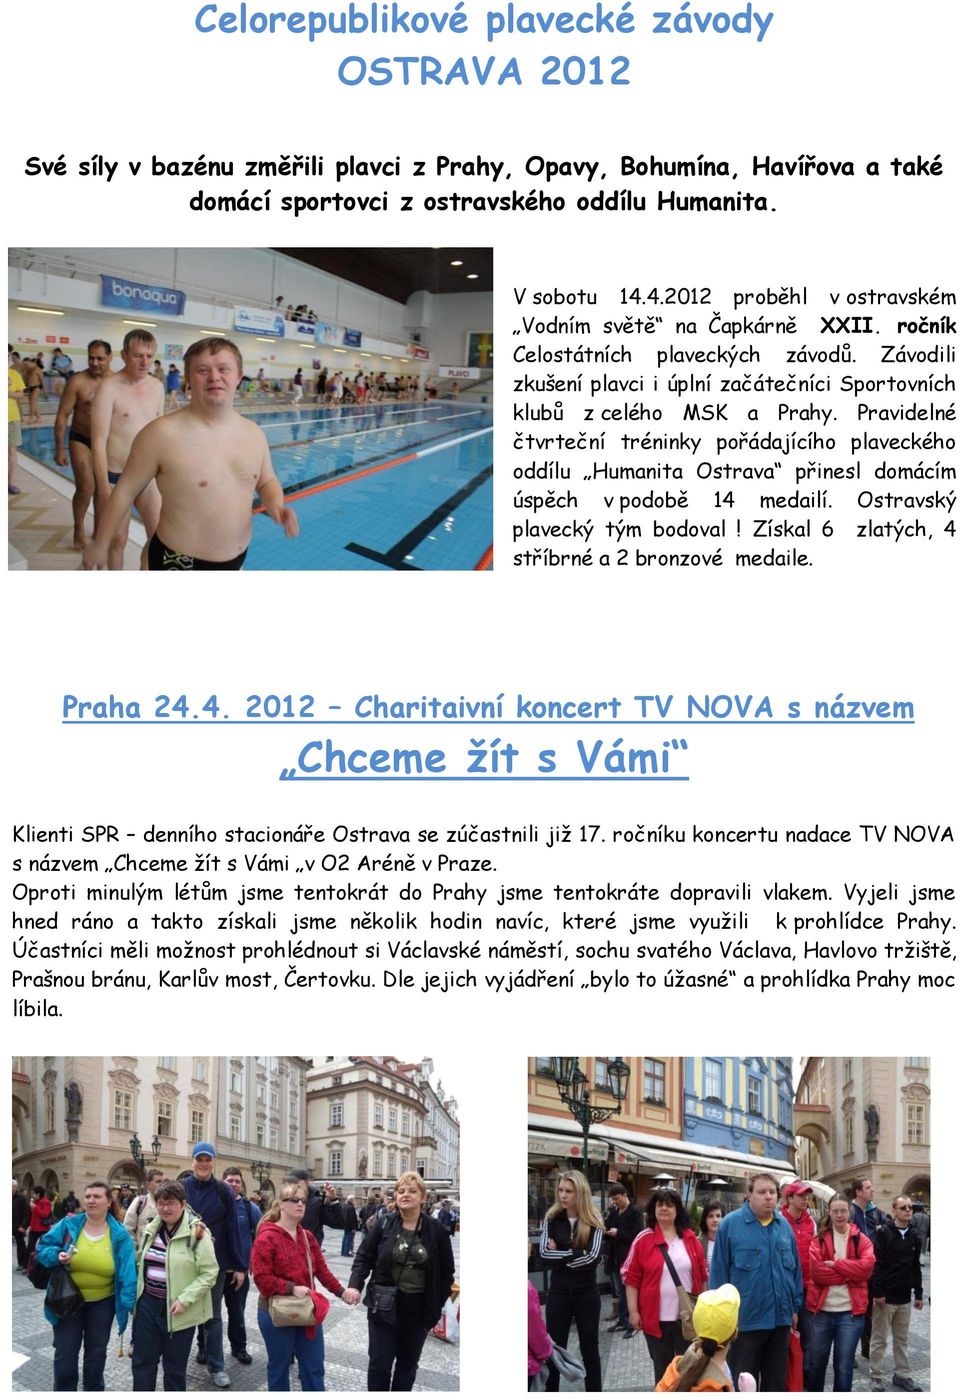 Pravidelné čtvrteční tréninky pořádajícího plaveckého oddílu Humanita Ostrava přinesl domácím úspěch v podobě 14 medailí. Ostravský plavecký tým bodoval!